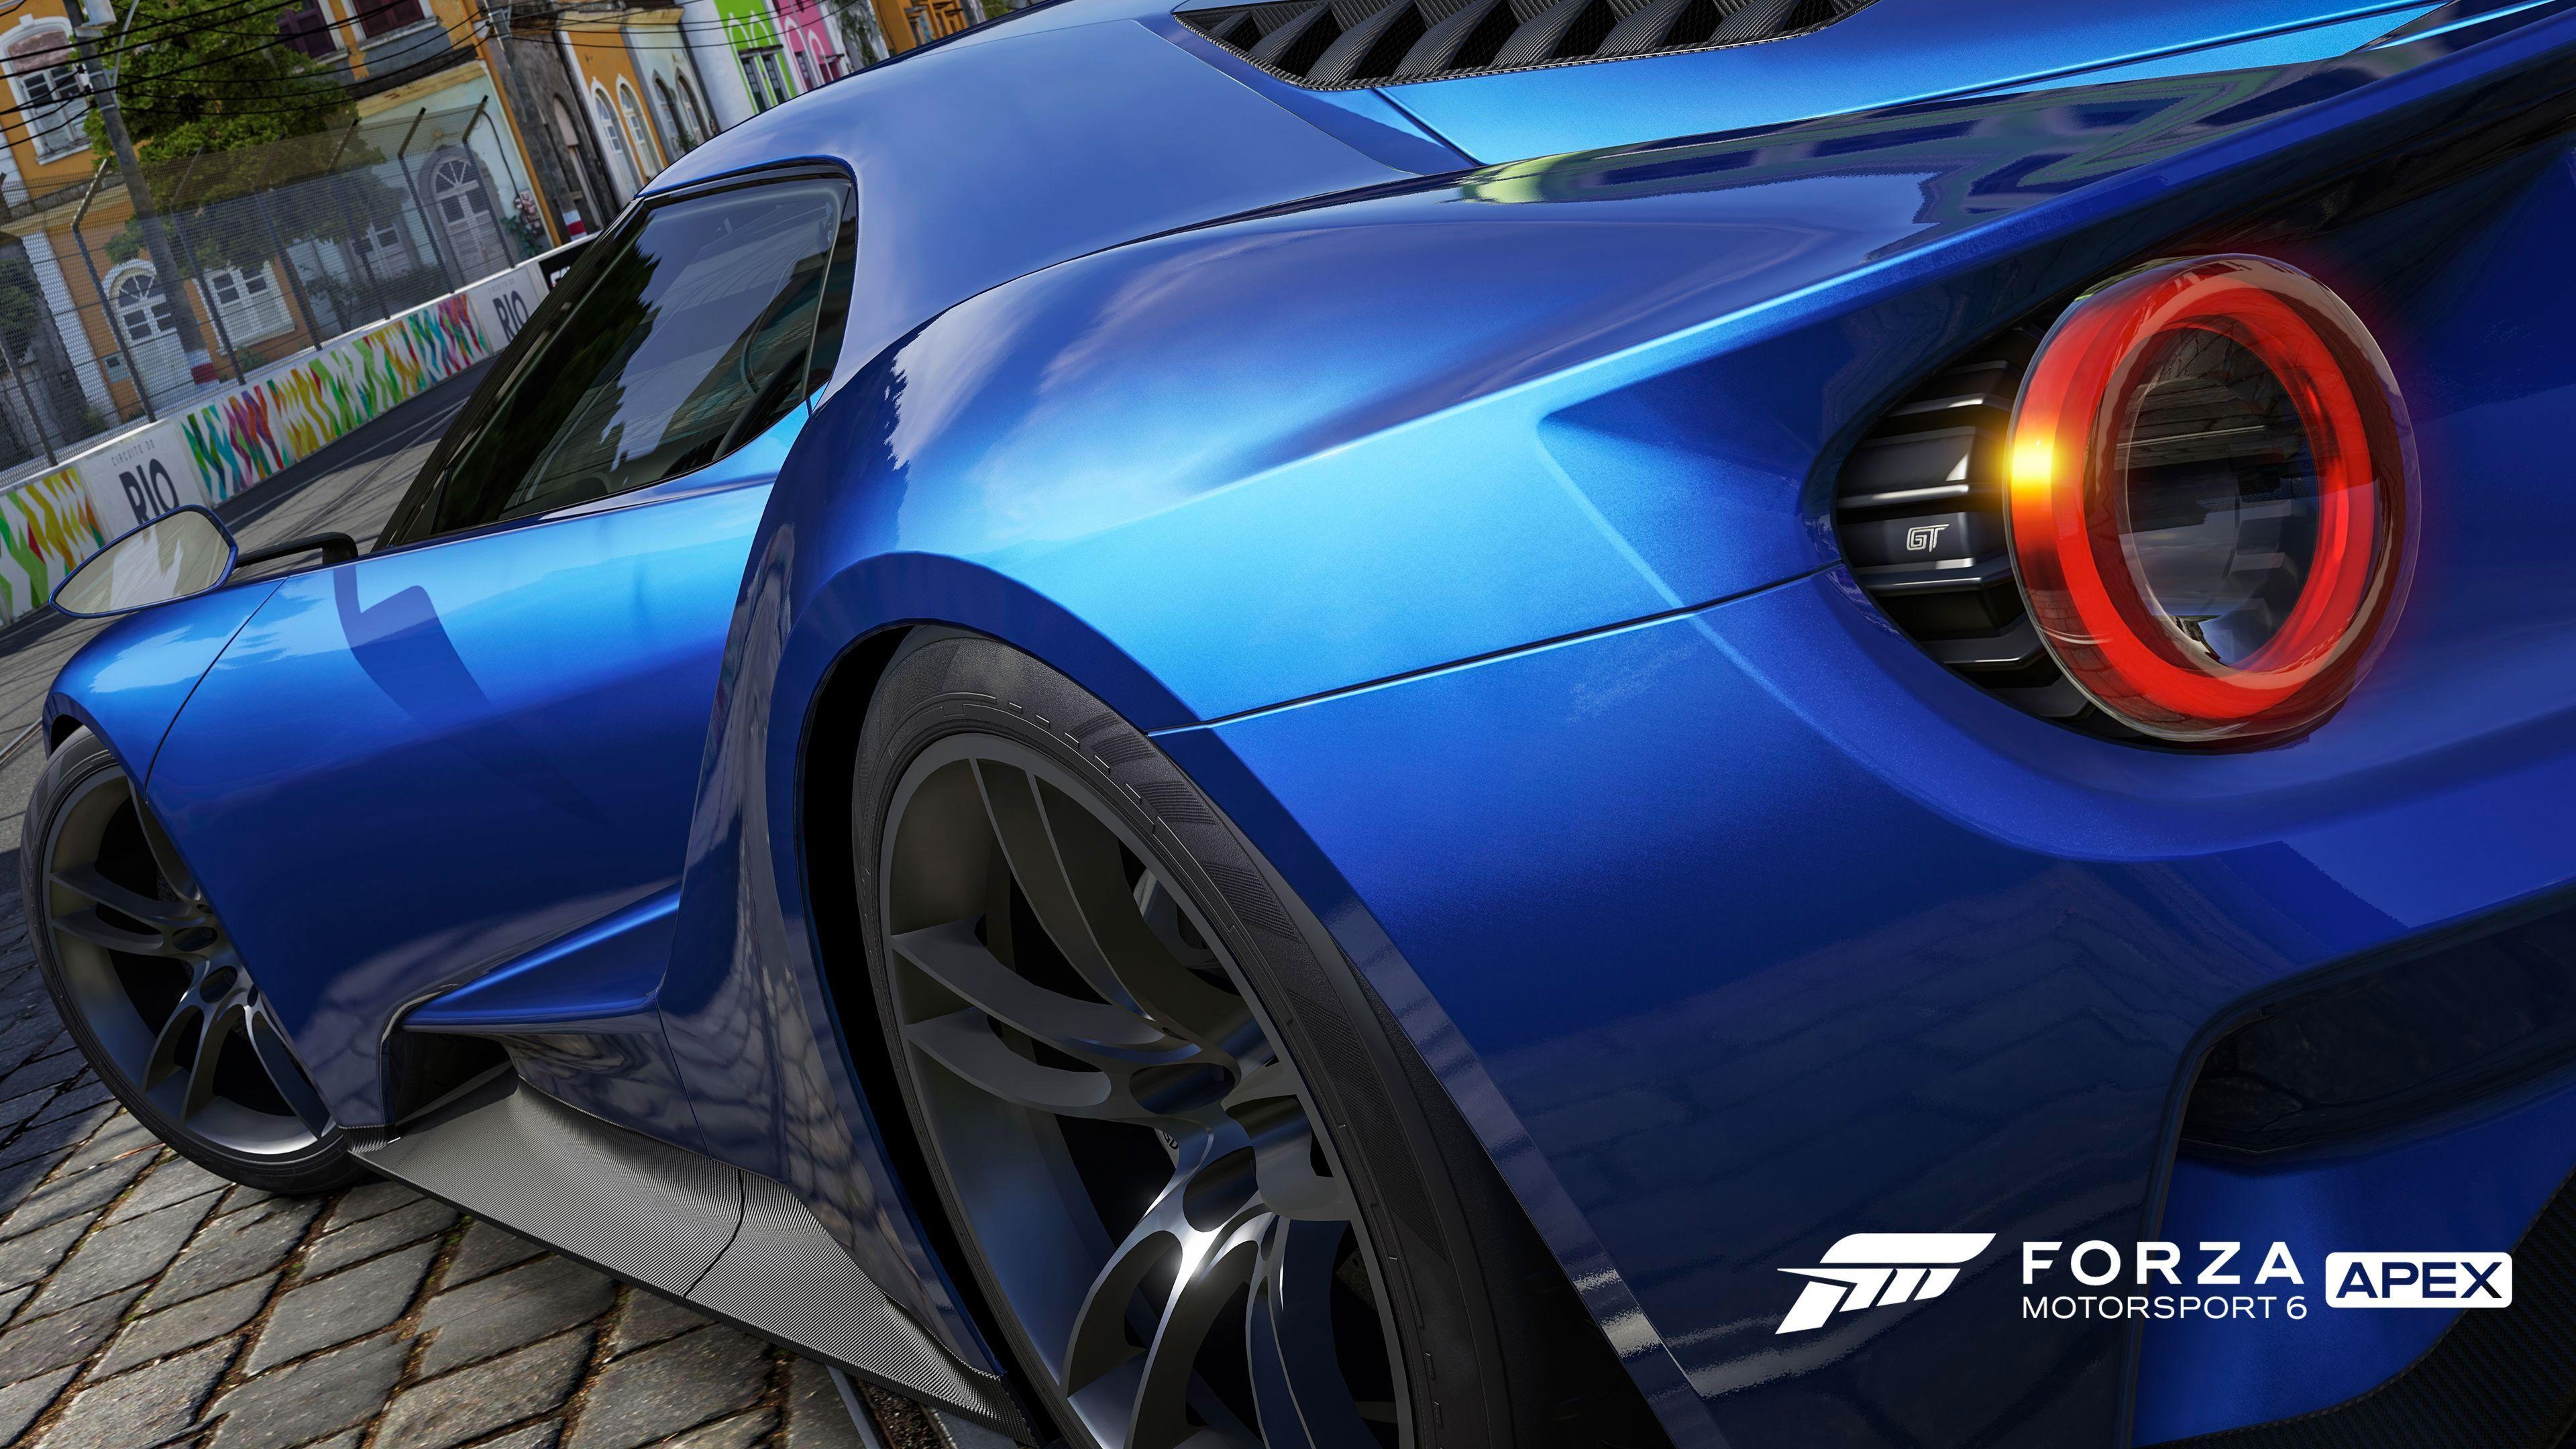 Forza Motorsport 6 Wallpaper in Ultra HDK